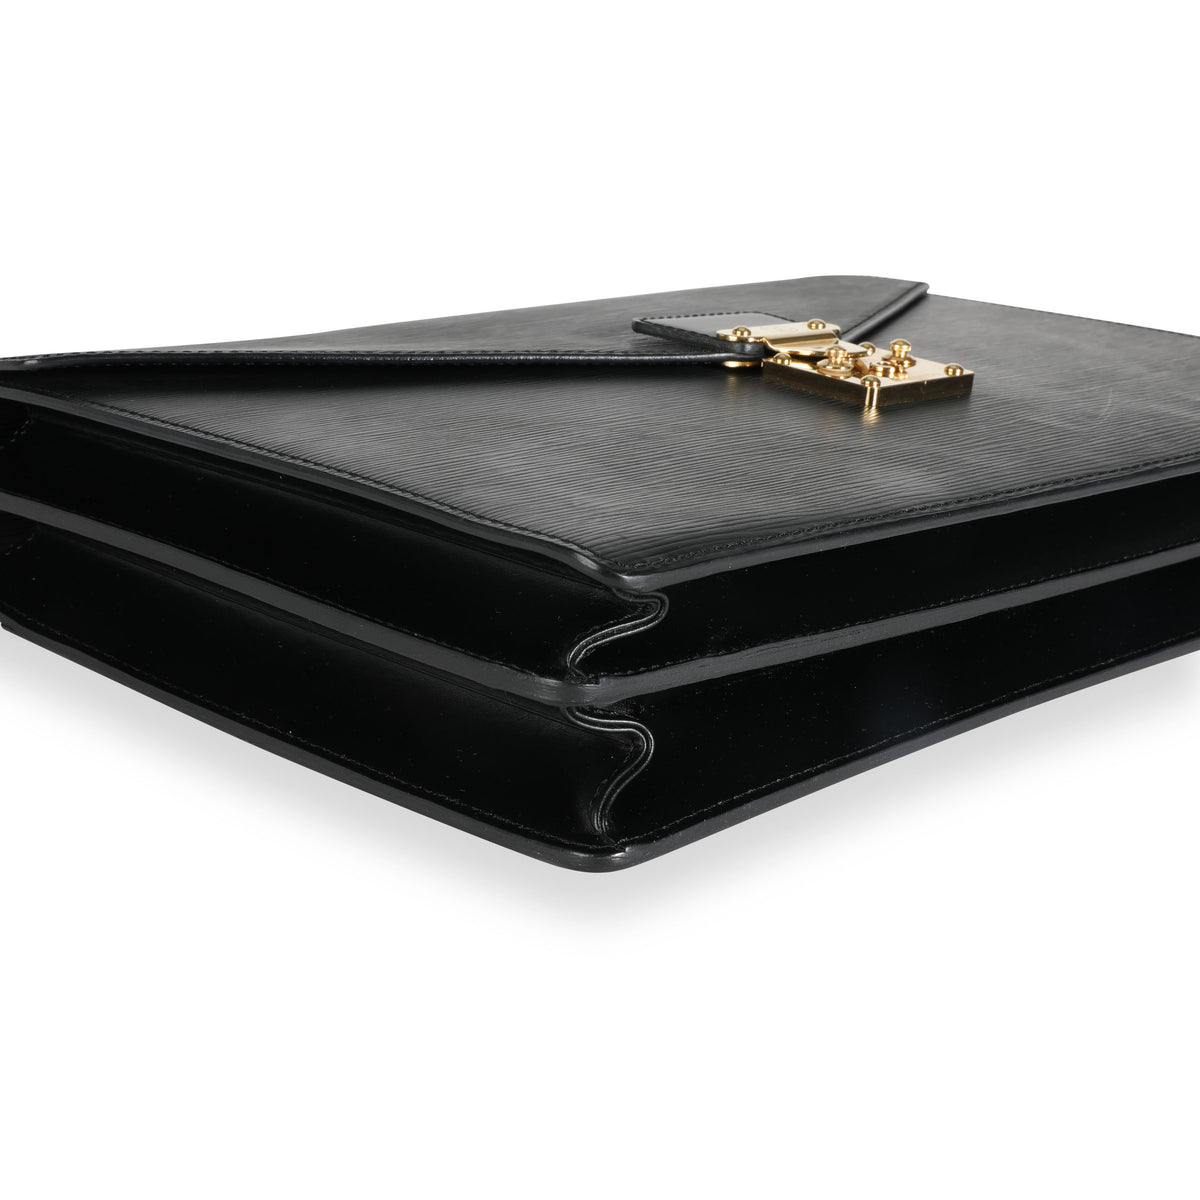 Louis Vuitton Black Epi Leather Serviette Conseiller Business Briefcase  Louis Vuitton